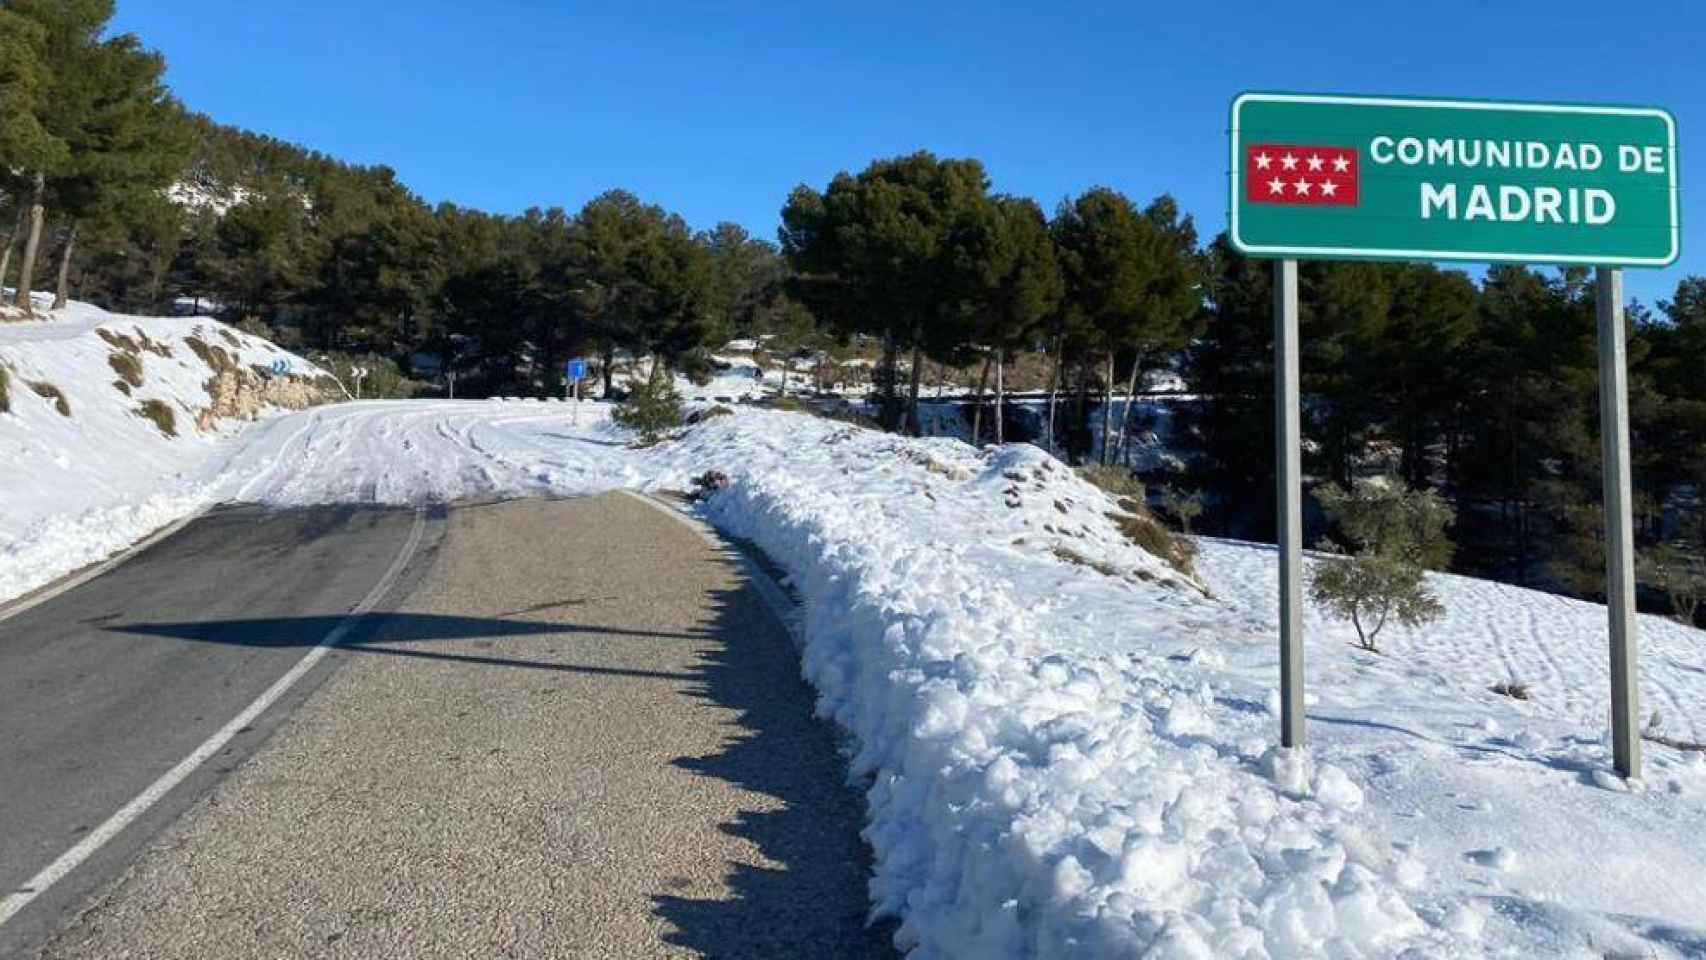 CM-322, en Villarrubia de Santiago, dividí Madrid de Castilla-La Mancha por la nieve. Aquí despejada, allí no